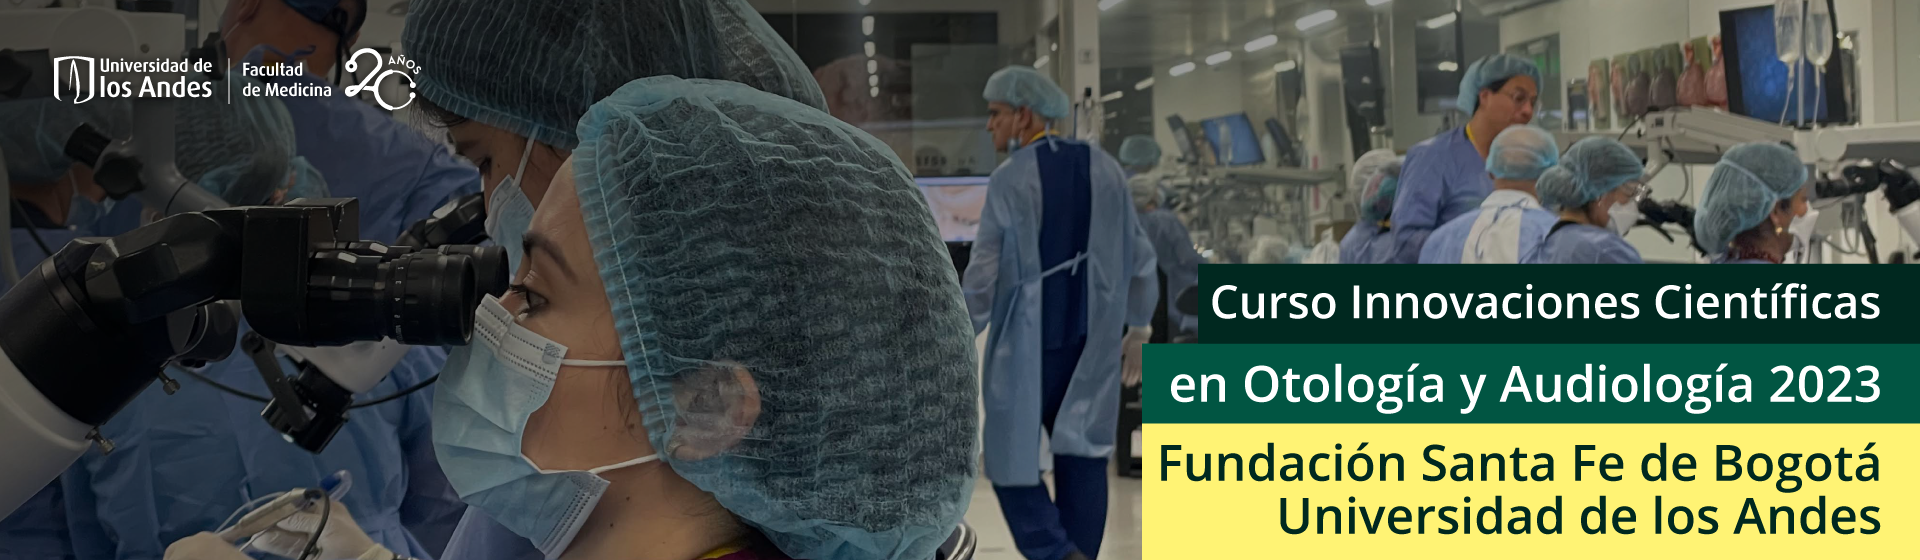 Curso Innovaciones Científicas en Otología y Audiología 2023 Fundación Santa Fe de Bogotá - Universidad de los Andes